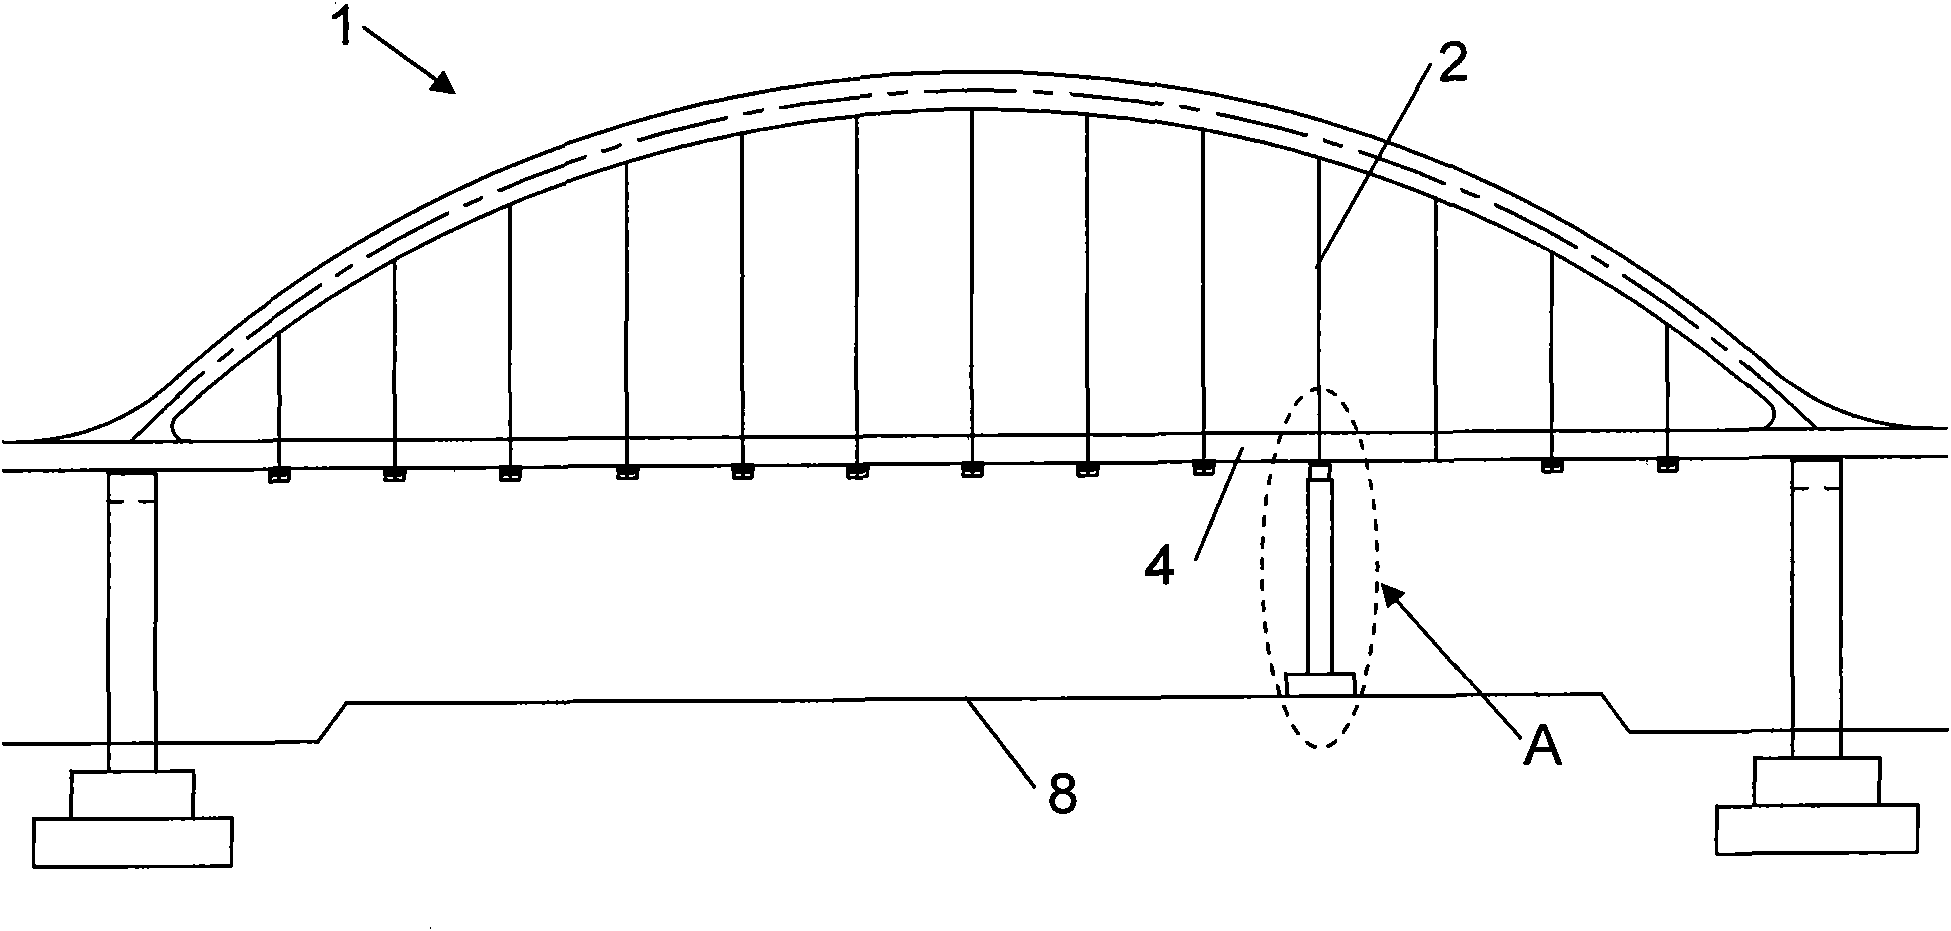 Suspender replacement method for tie bar type overpass bridge